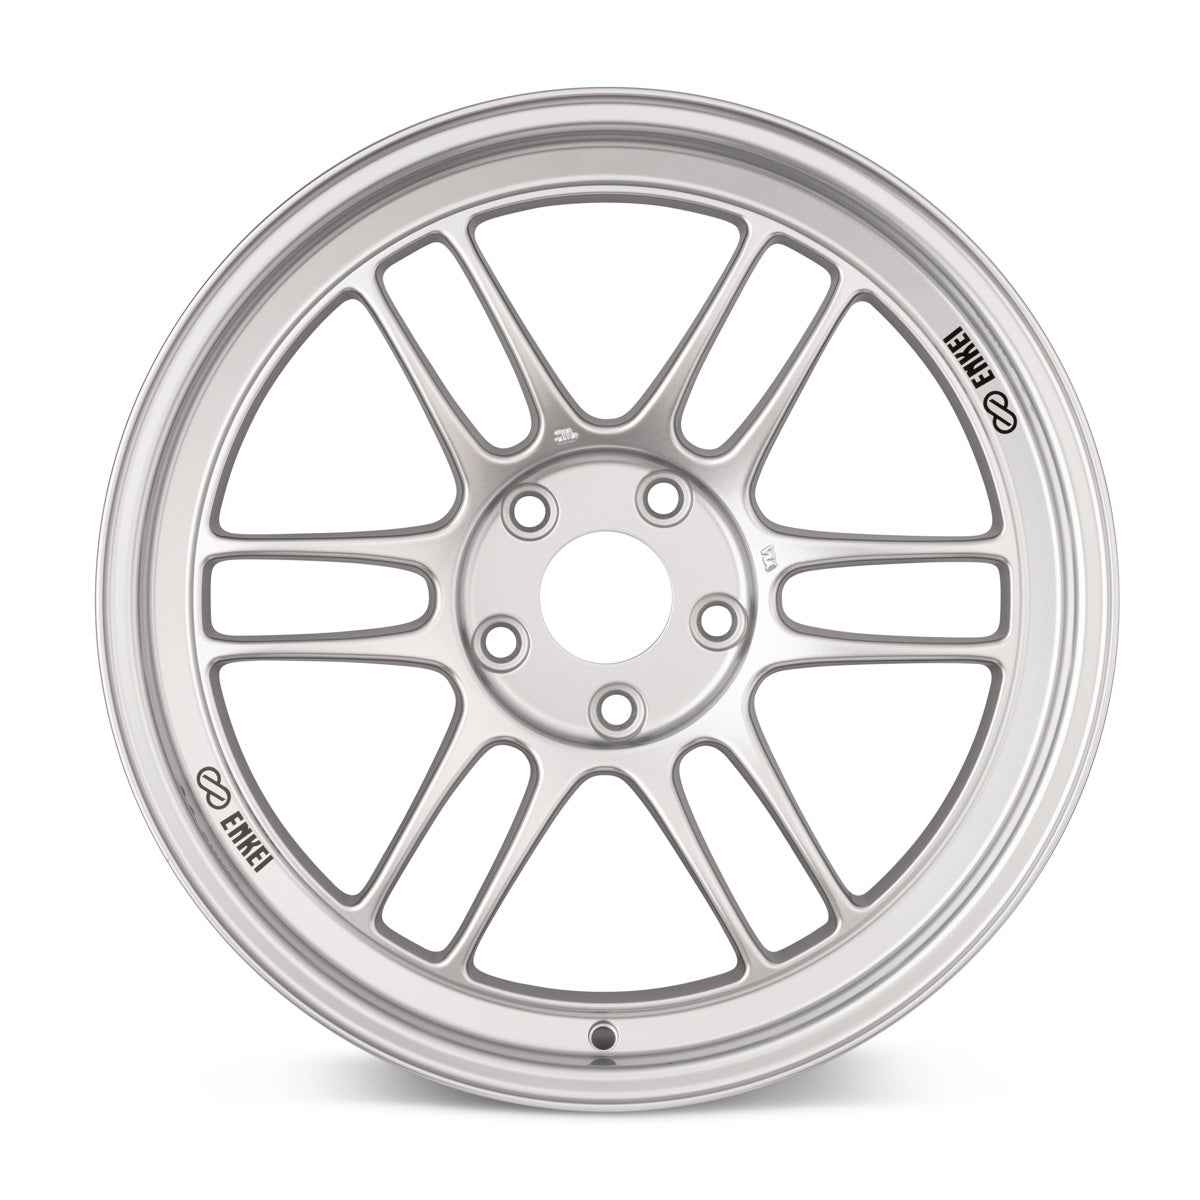 Enkei RPF1 16x7 4x100 43mm Offset 73mm Bore Silver Wheel Miata 4-Lug / 02-06 Mini / Honda & Acura - eliteracefab.com